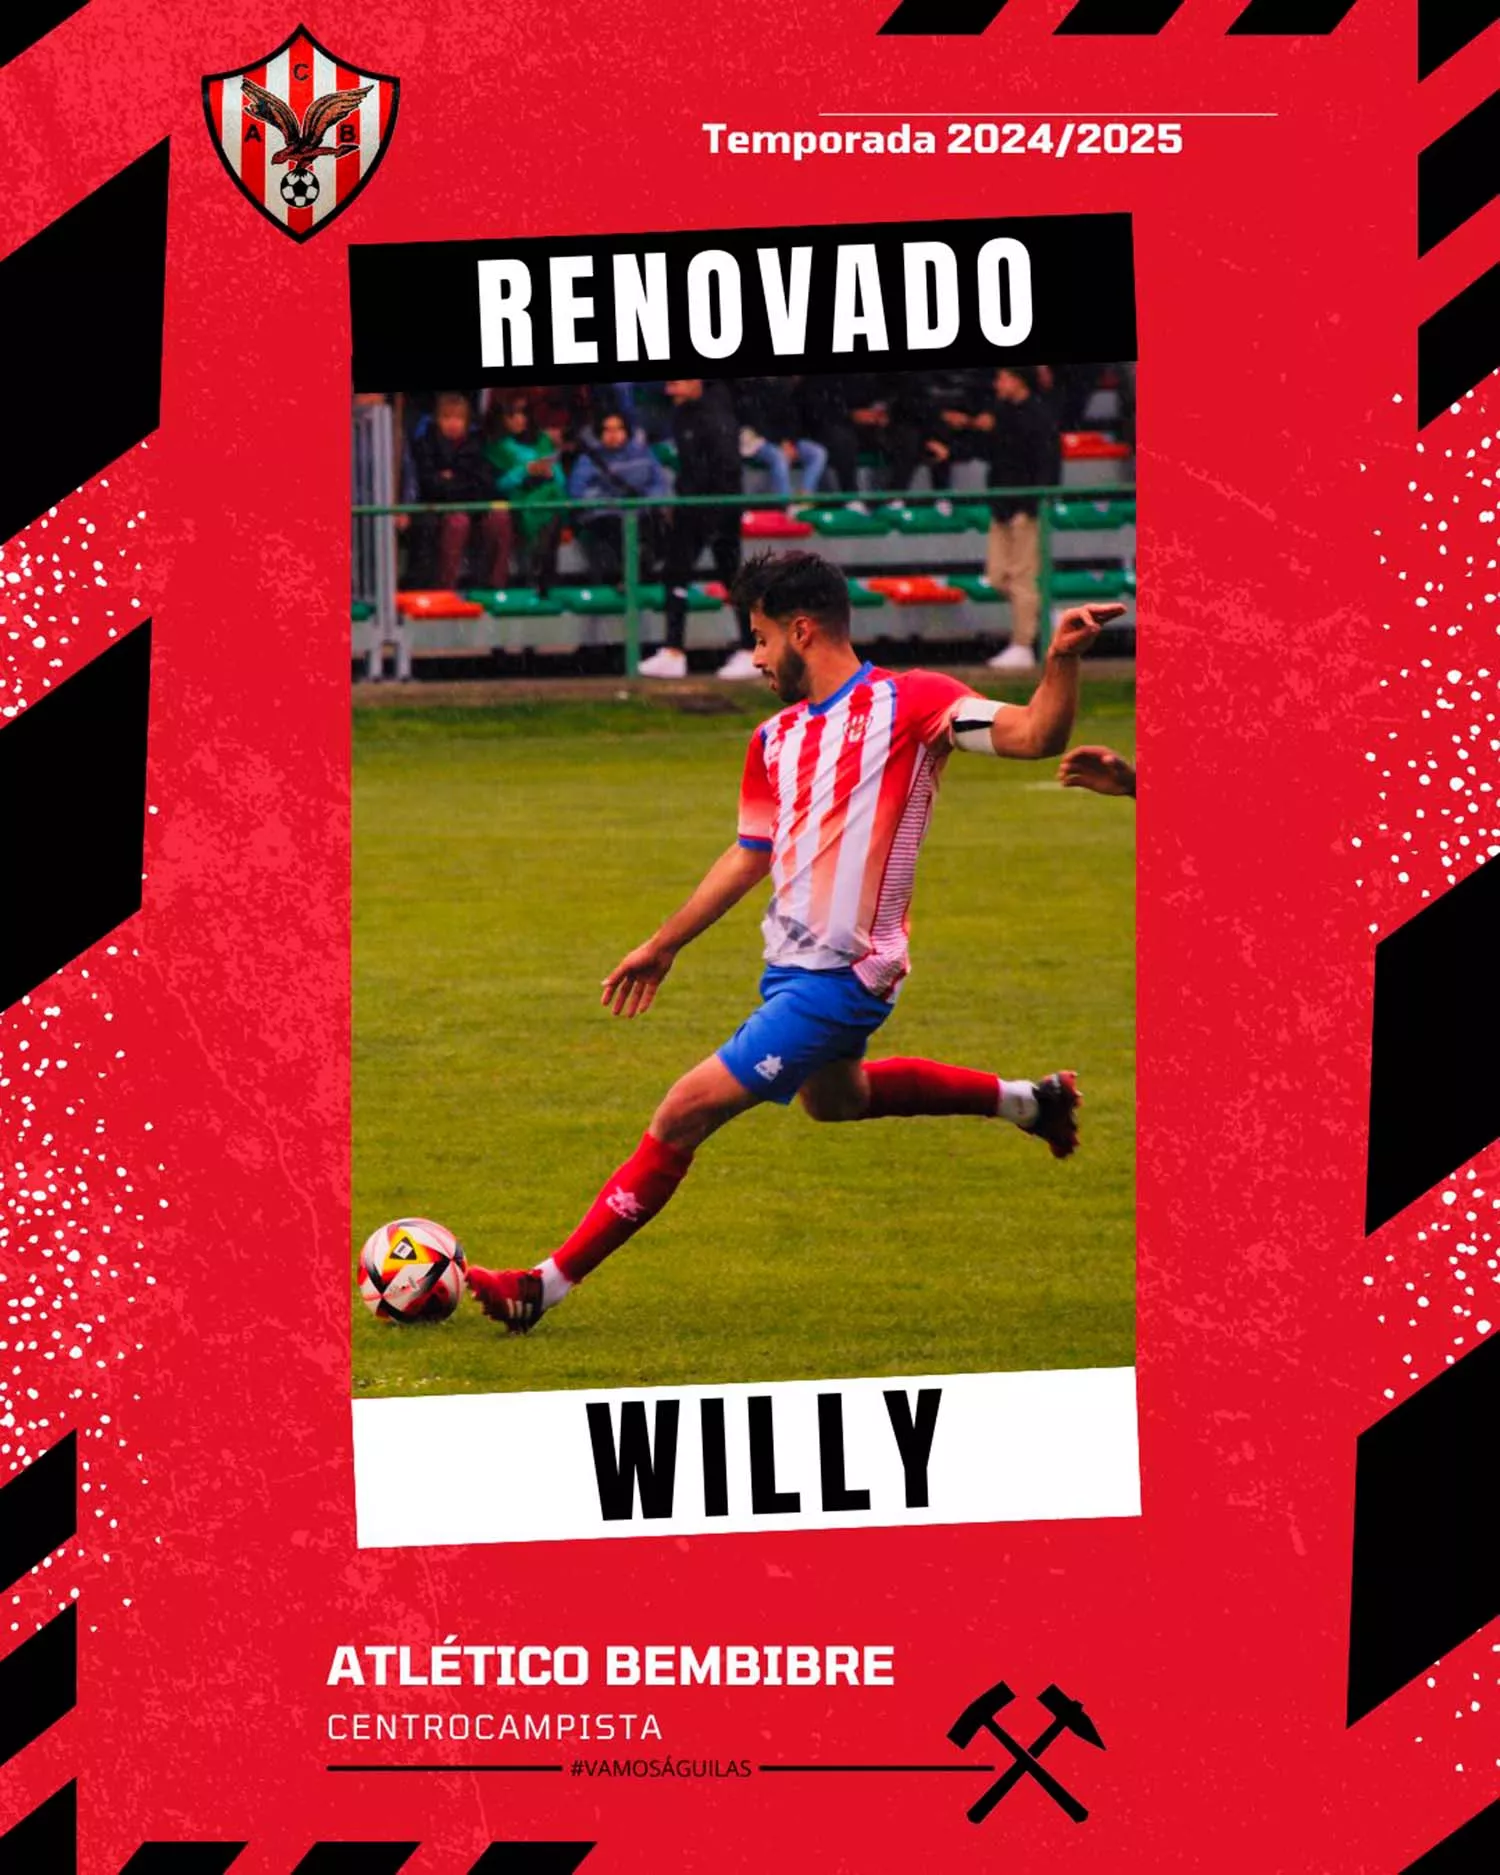 Anuncio de la renovación de Willy en las redes sociales del Atlético Bembibre